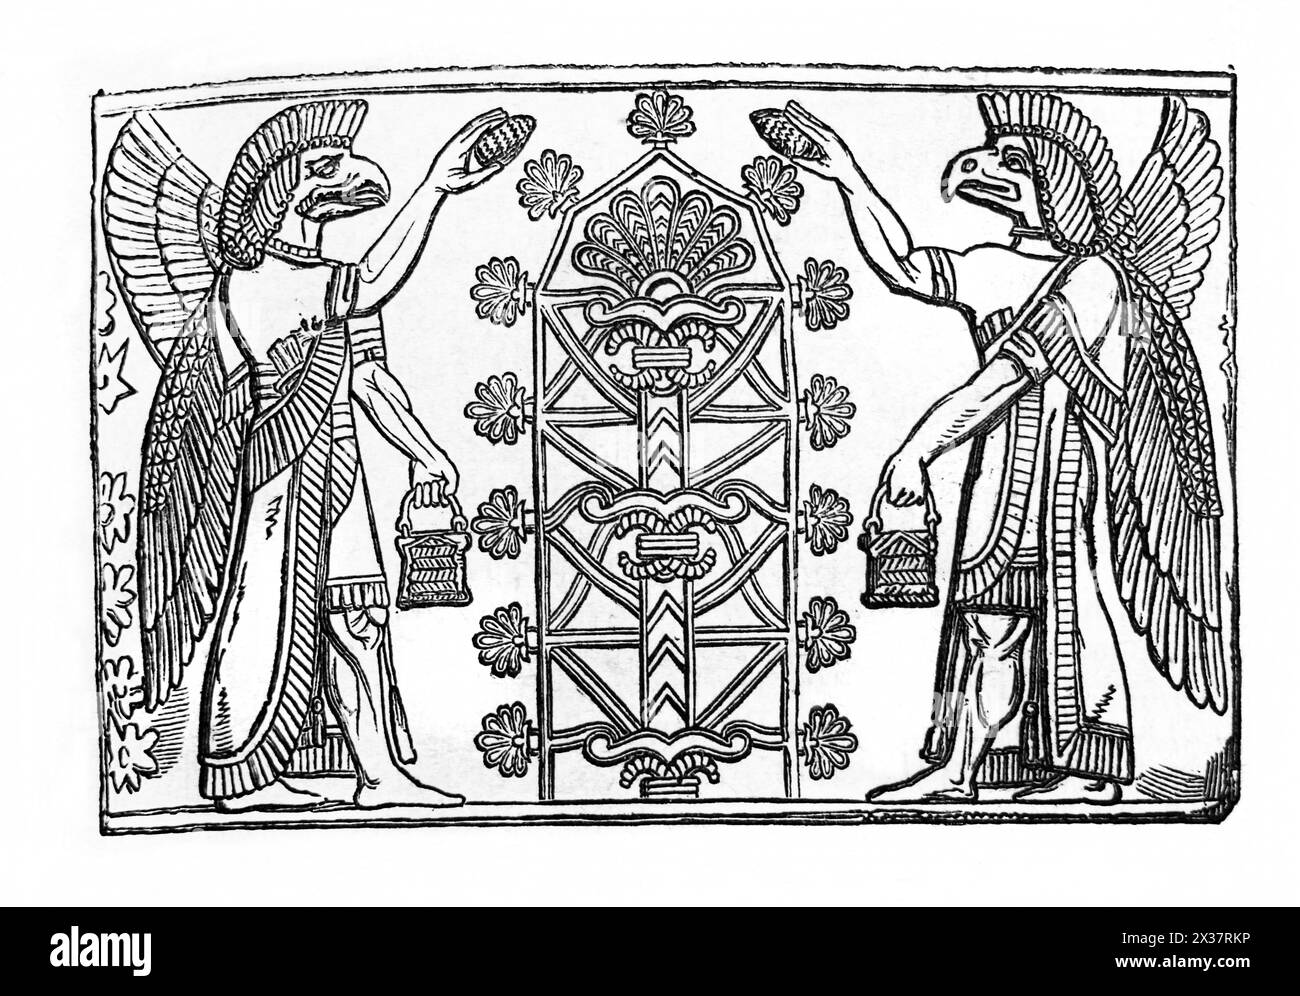 Gravure sur bois du Dieu Assyrien Nisroch arrosant l'arbre sacré avec de l'eau à Ninive de la Bible de famille illustrée du XIXe siècle Banque D'Images